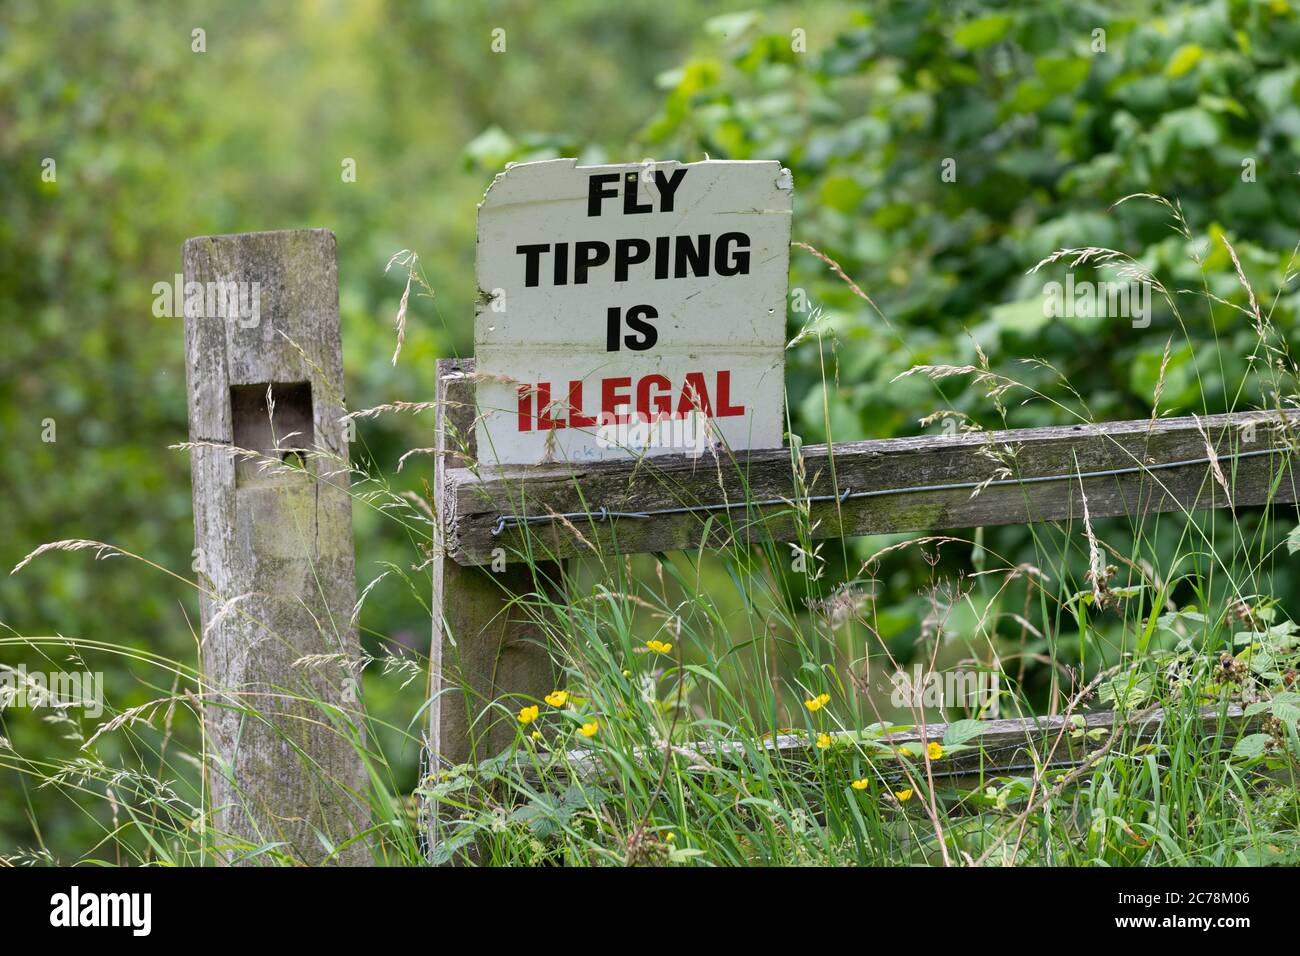 Le pourboire à la mouche est un signe illégal dans un endroit rural - Angleterre, Royaume-Uni Banque D'Images